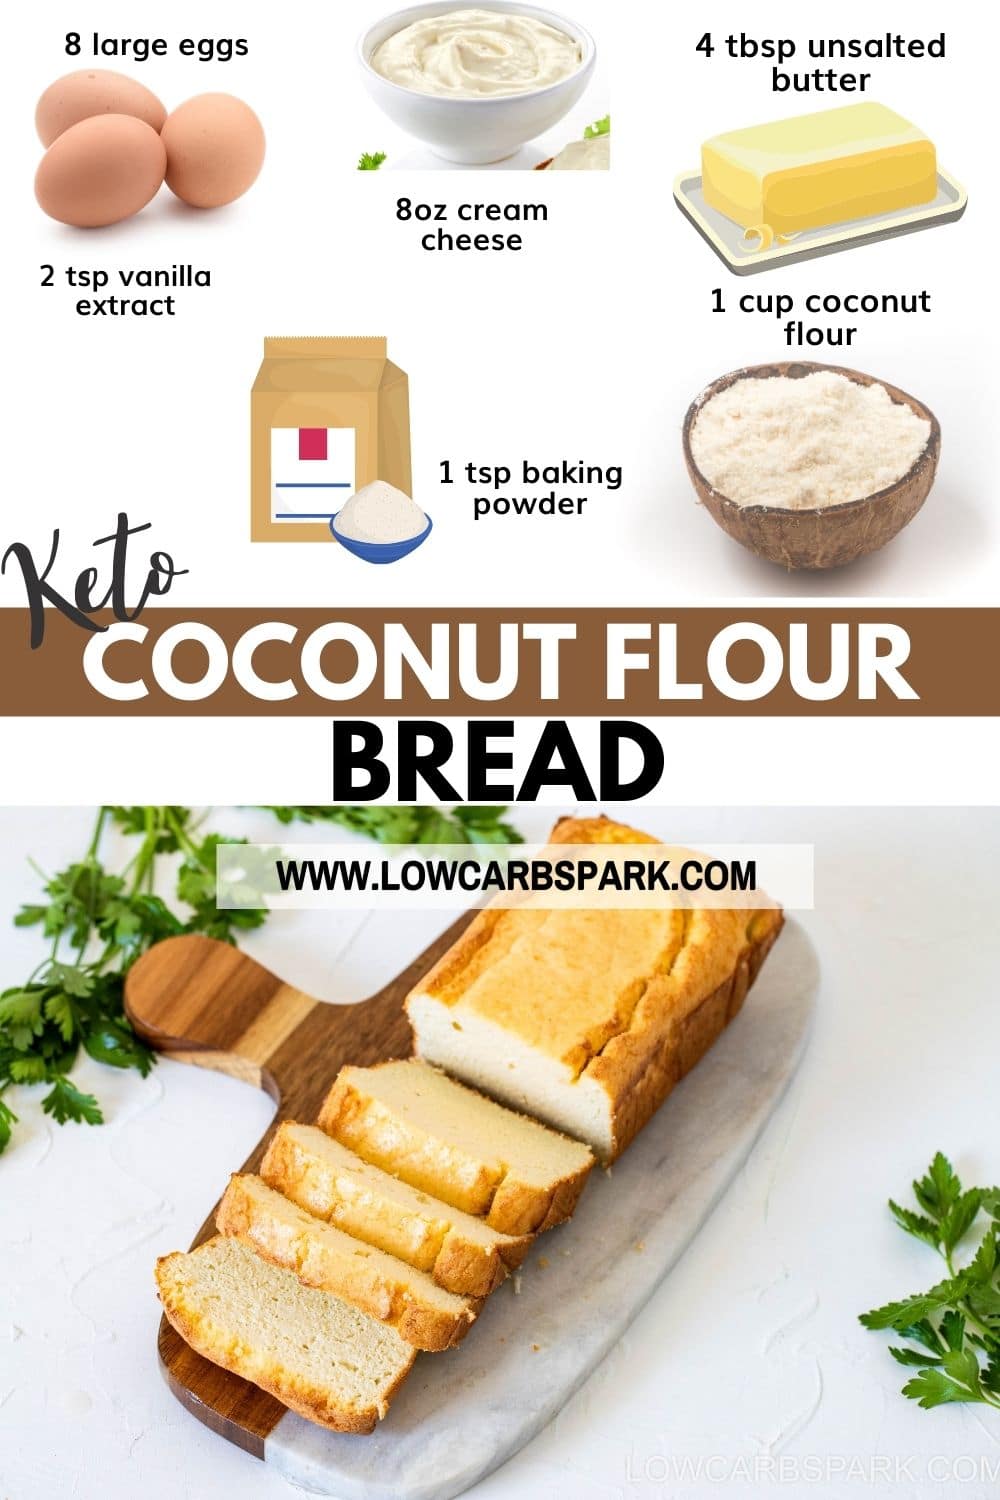 Easy Keto Coconut Flour Bread - Low Carb Bread Recipe